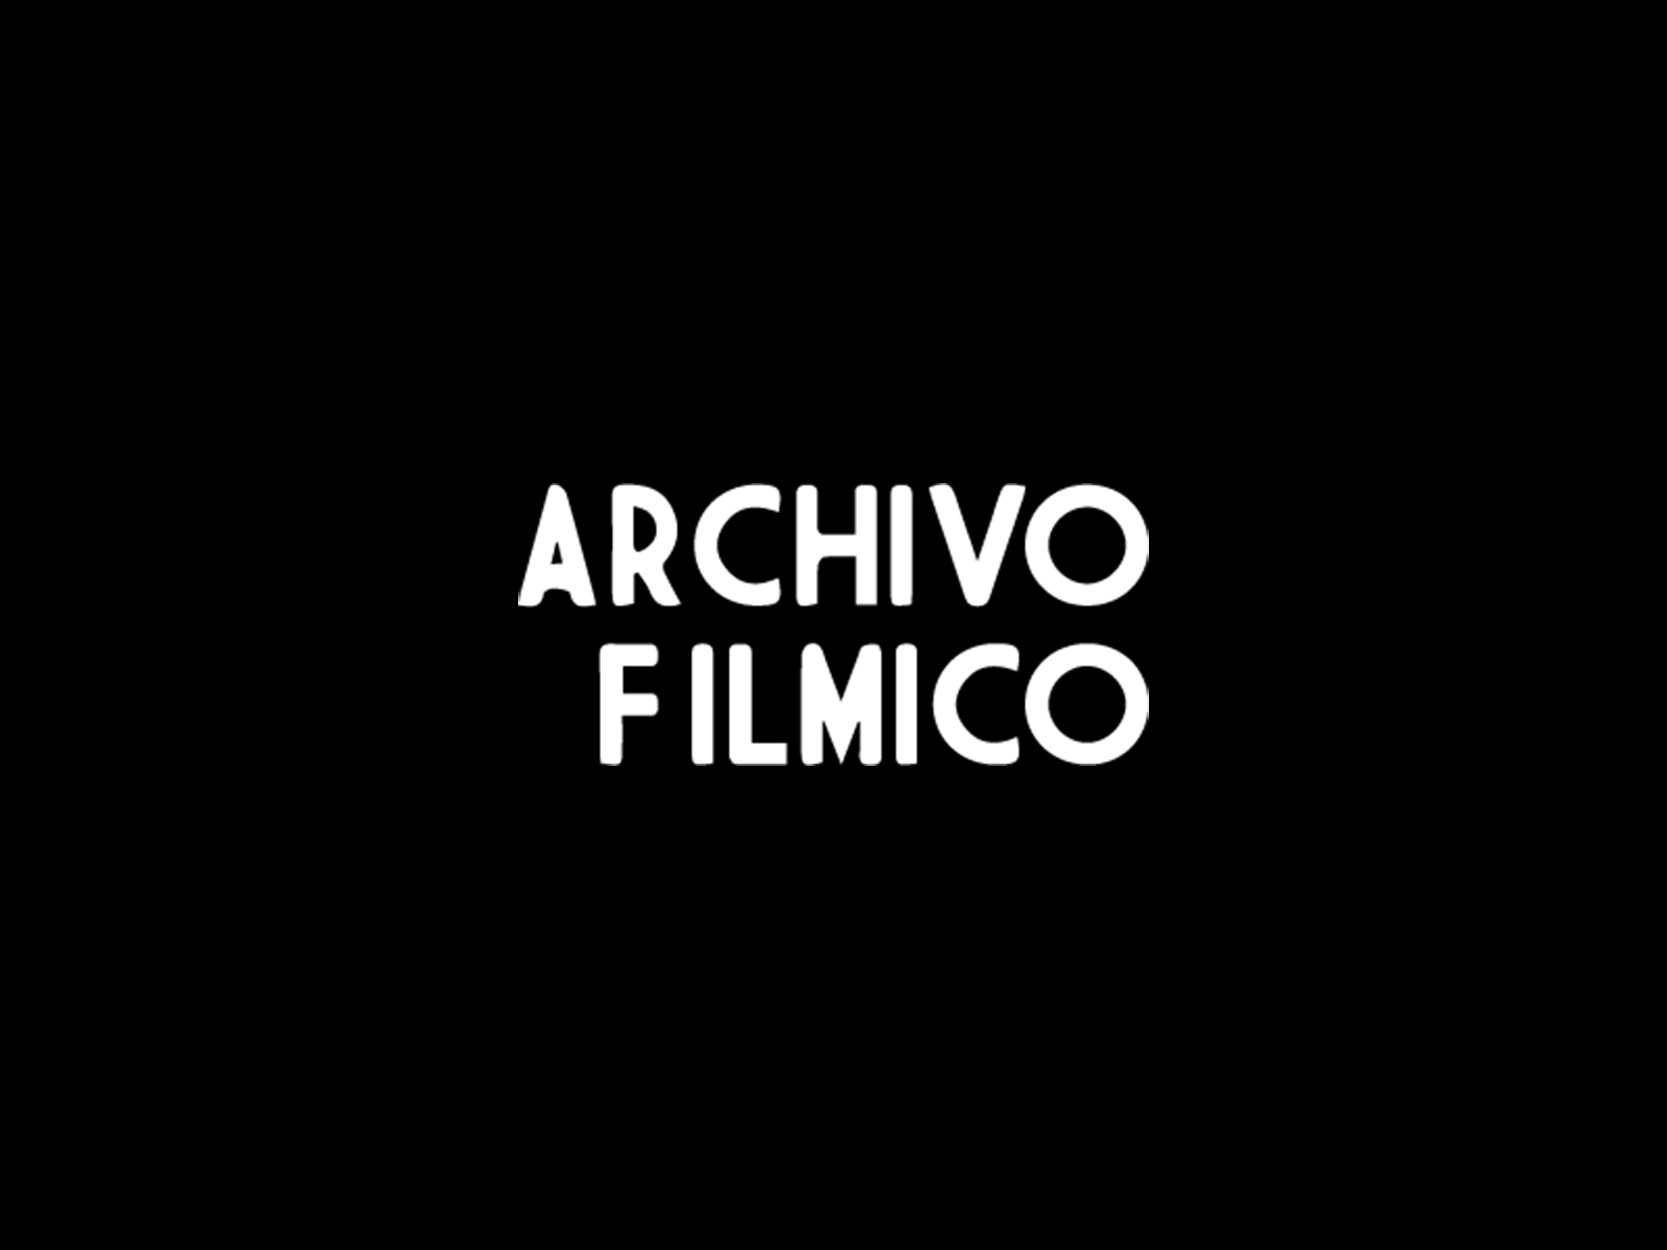 Archivo Fílmico